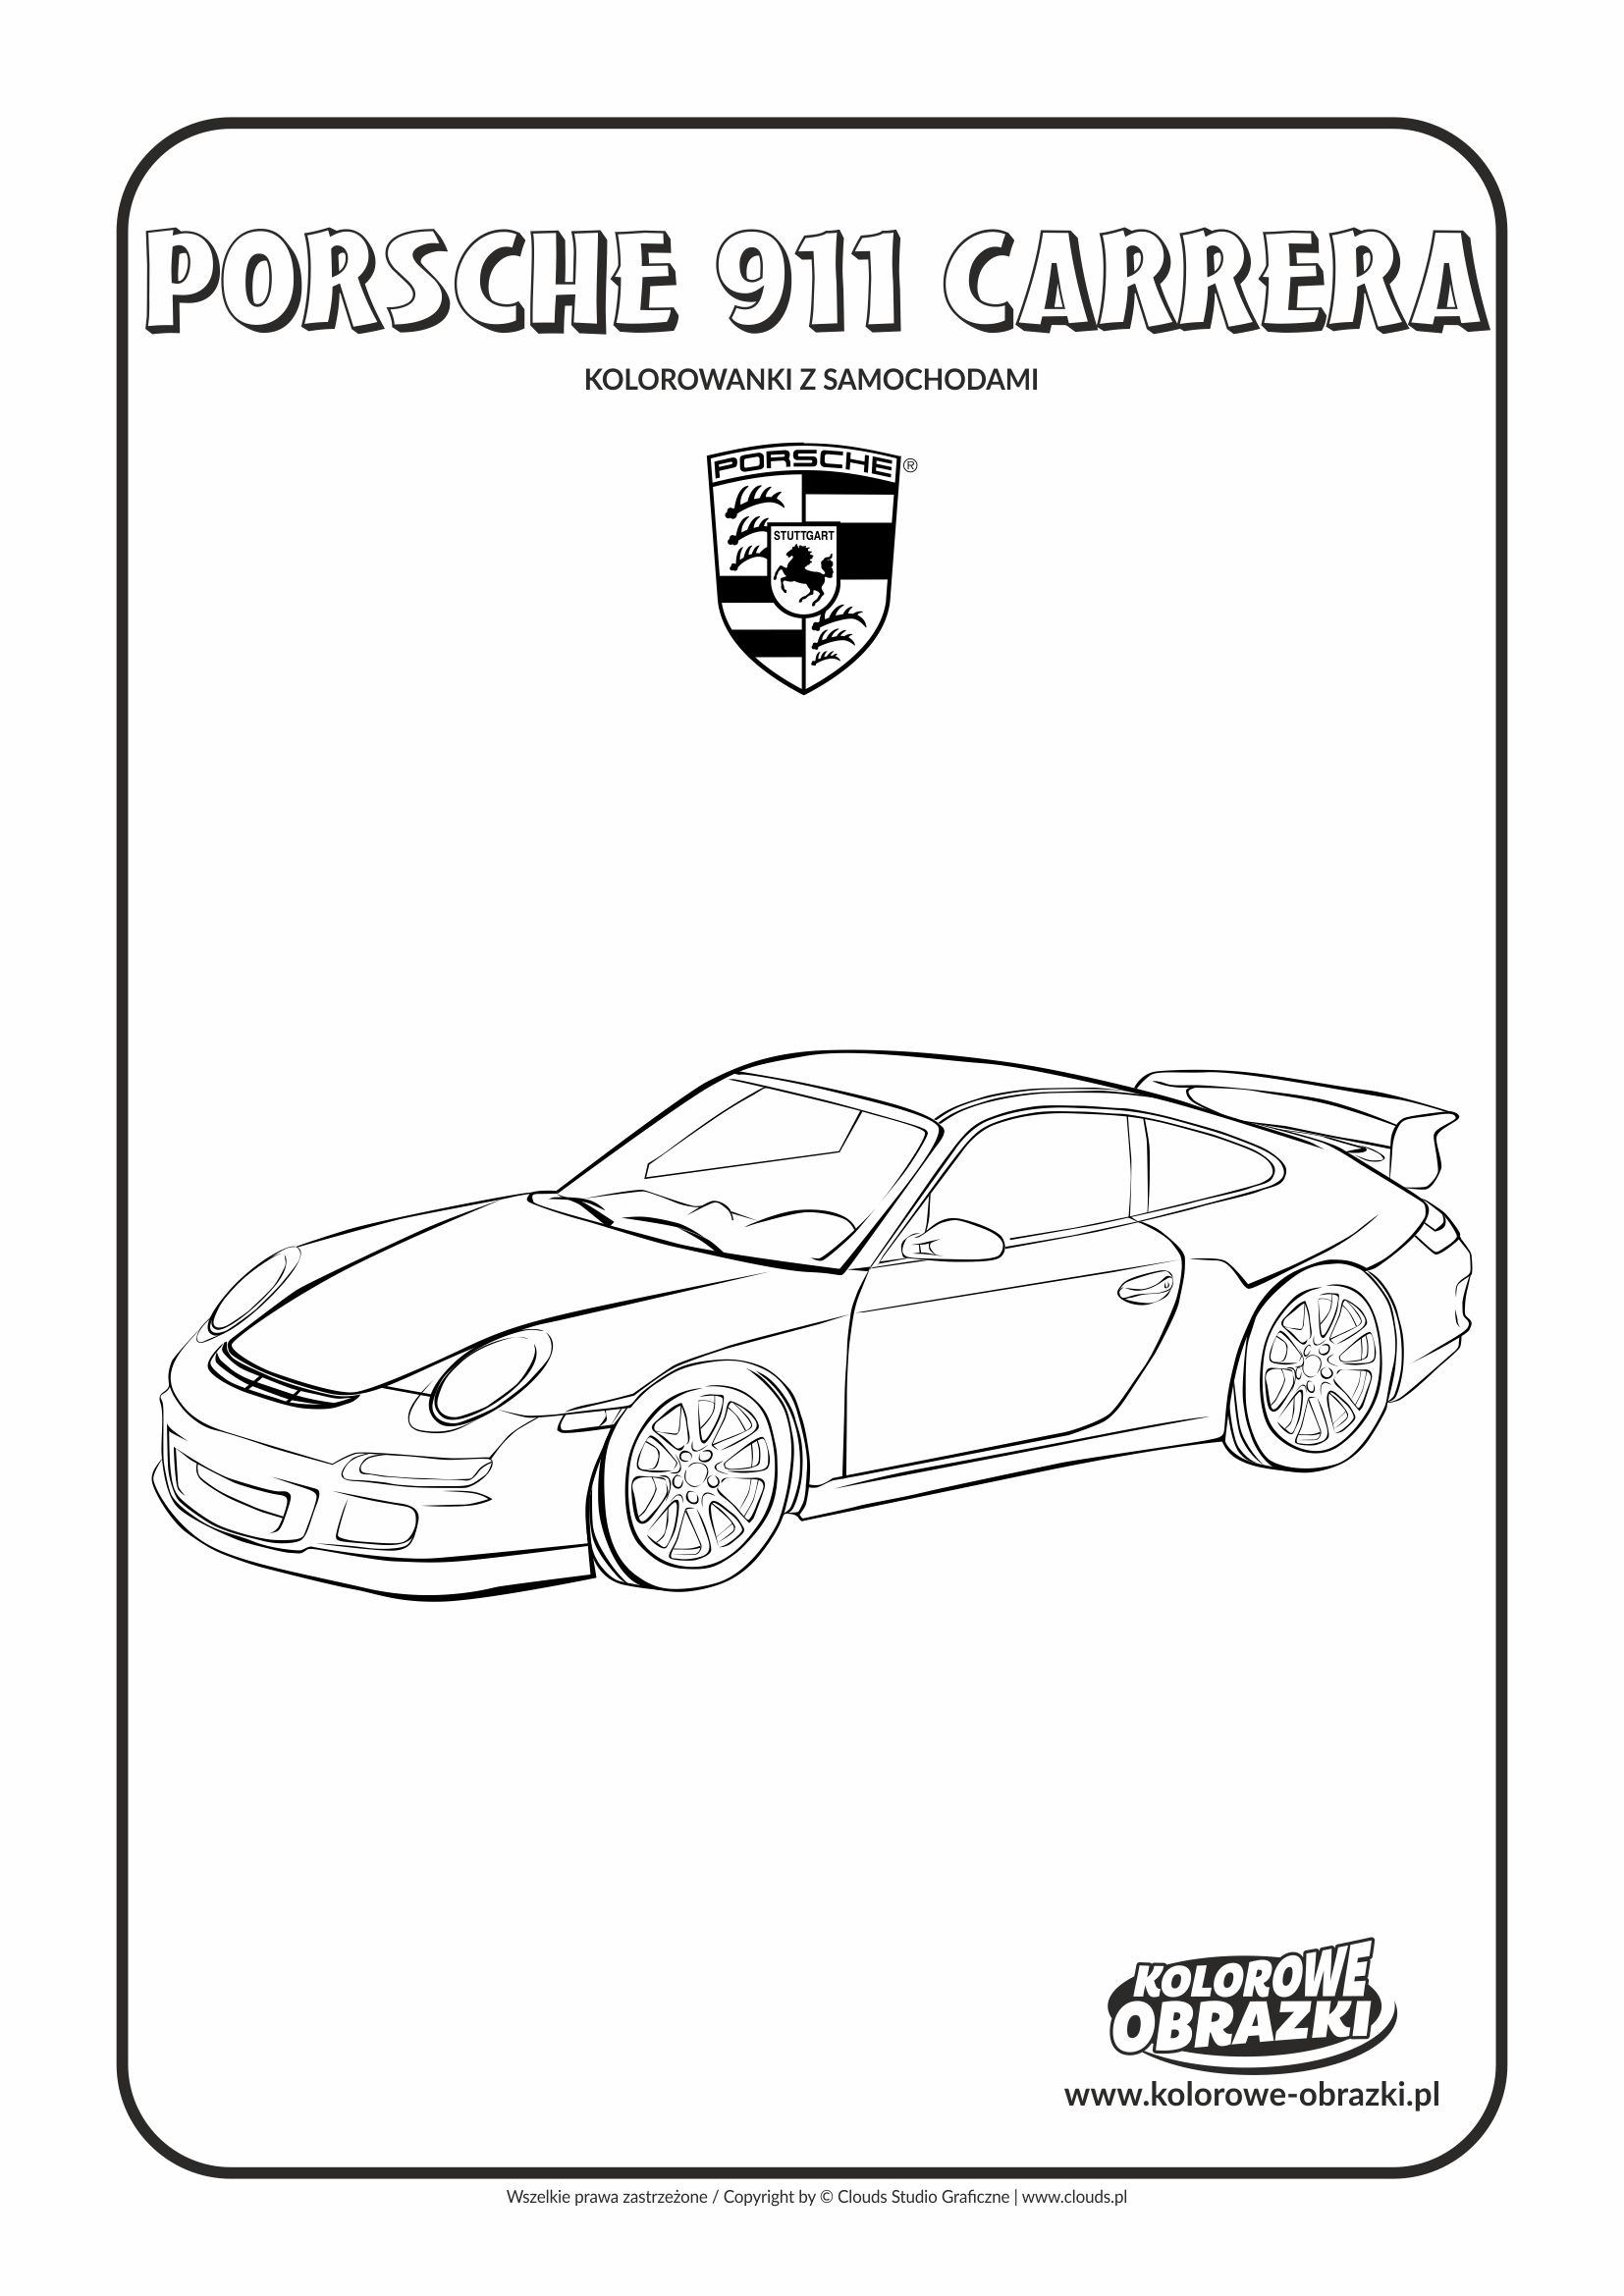 Porsche 911 Carrera раскраска